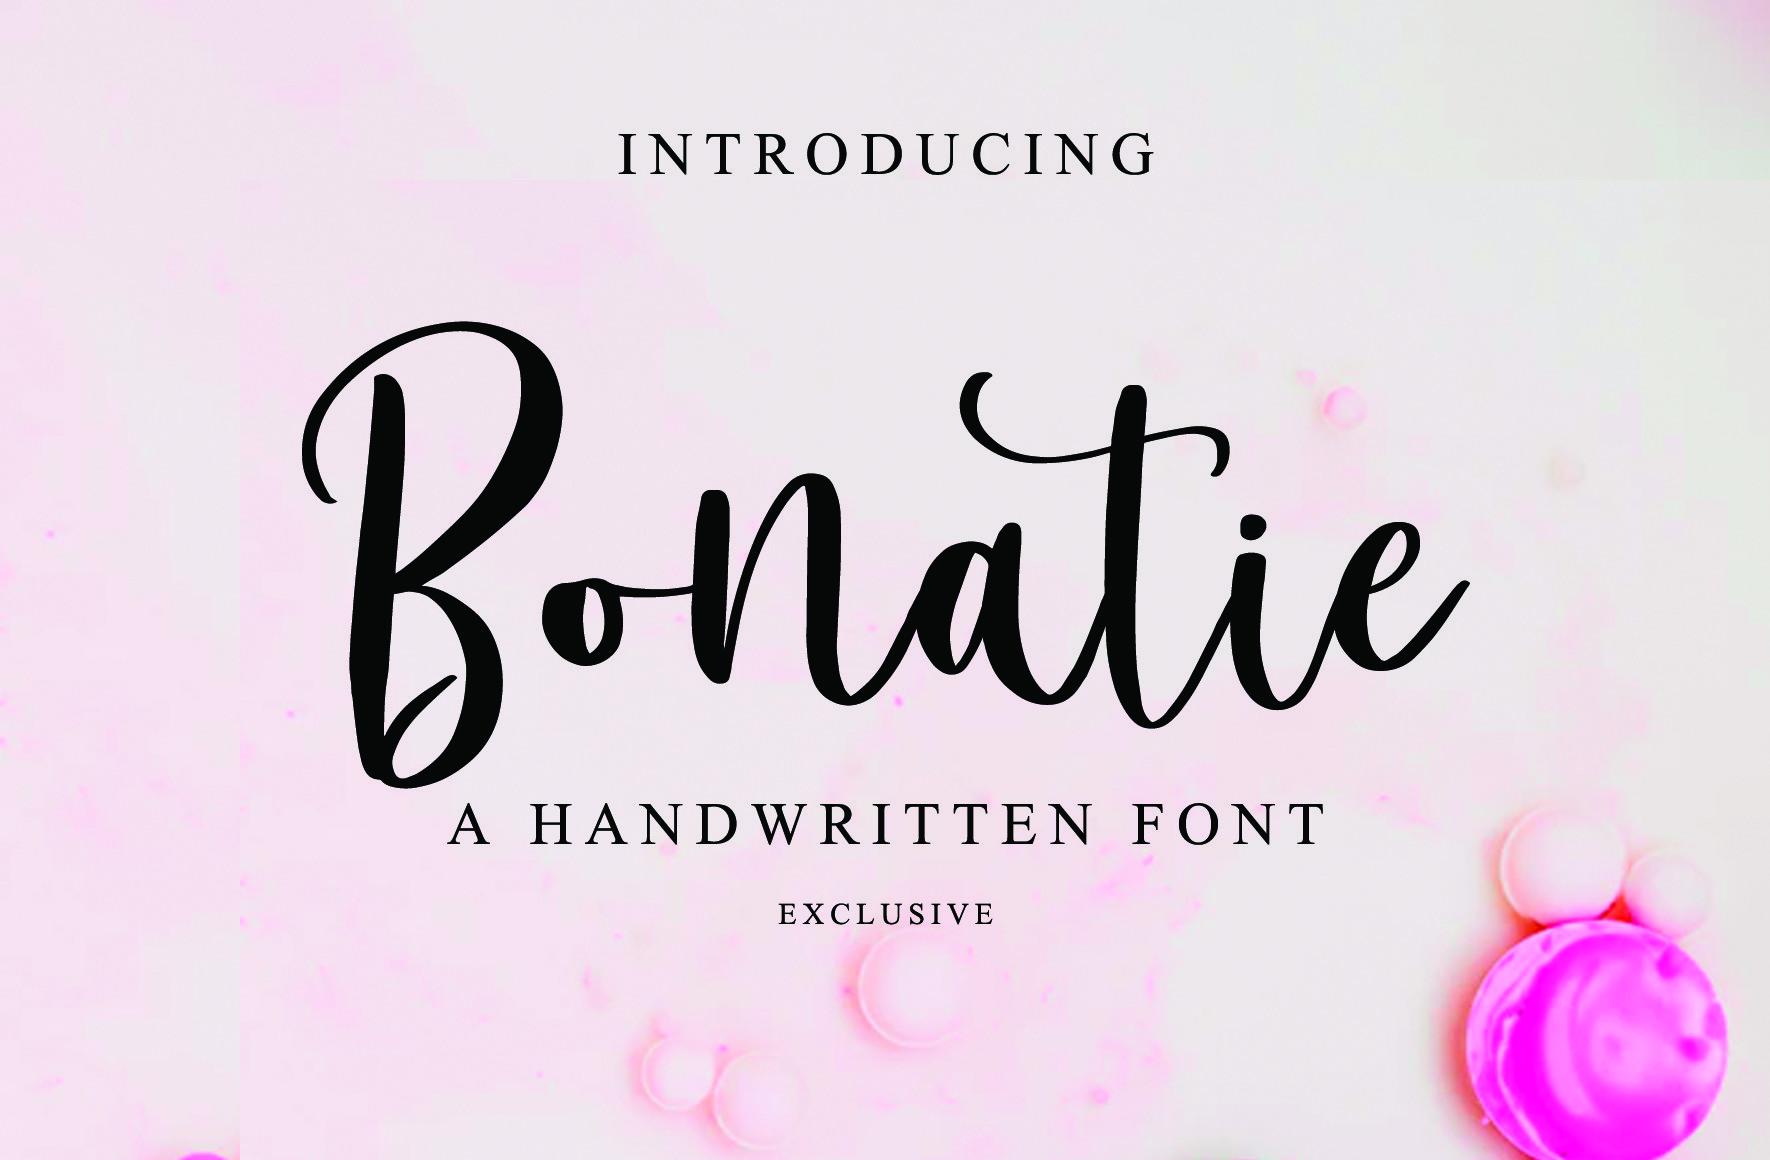 Bonatie Font